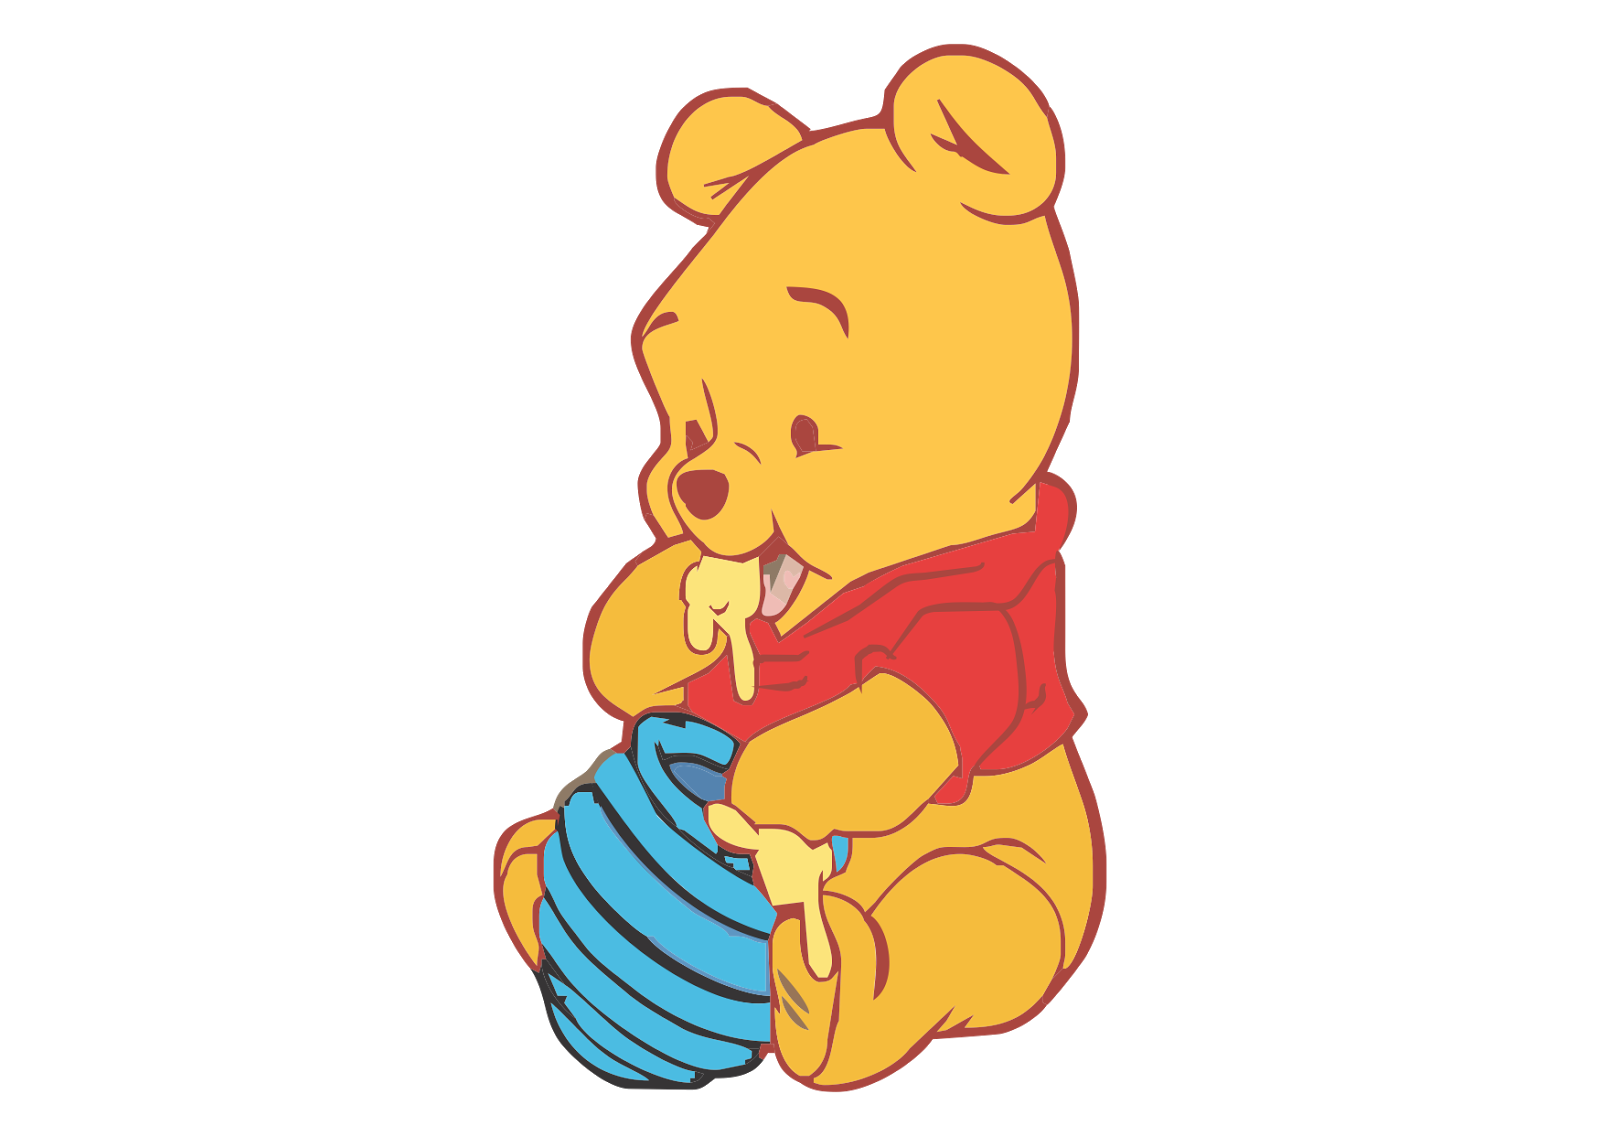 Divertidos personajes de dibujos animados y Winnie the Pooh para colorear para niños